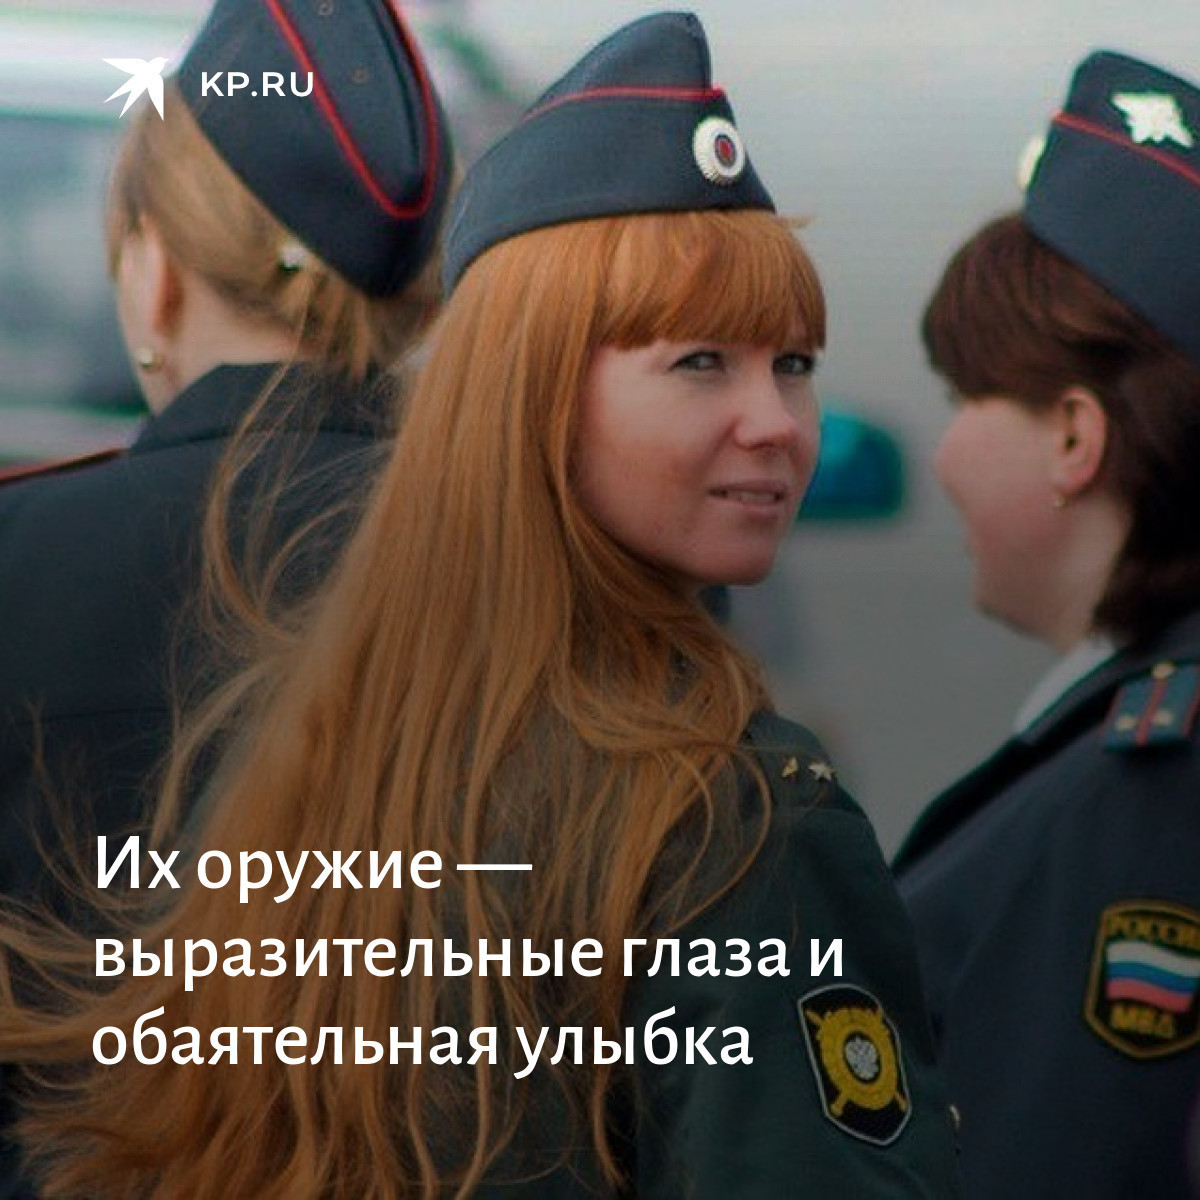 Быть женой полицейского. Женщина полицейский. Красавицы в погонах. Рыжая девушка с формами. Девушки полицейские России.